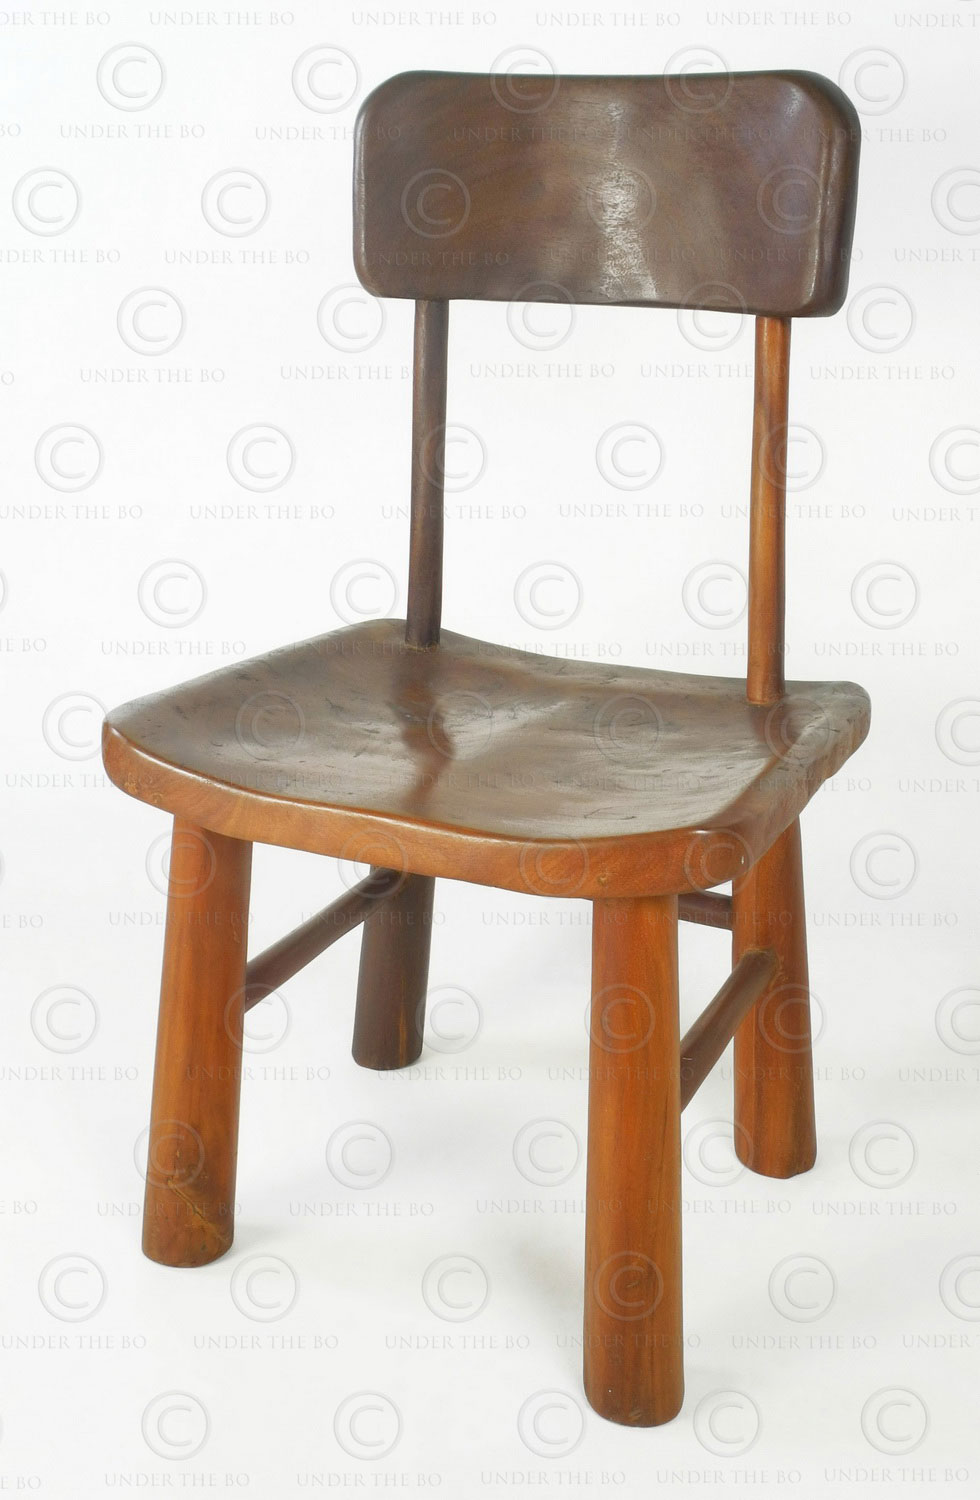 Chaise organique FV160A. Manufacturé à l'atelier Under the Bo